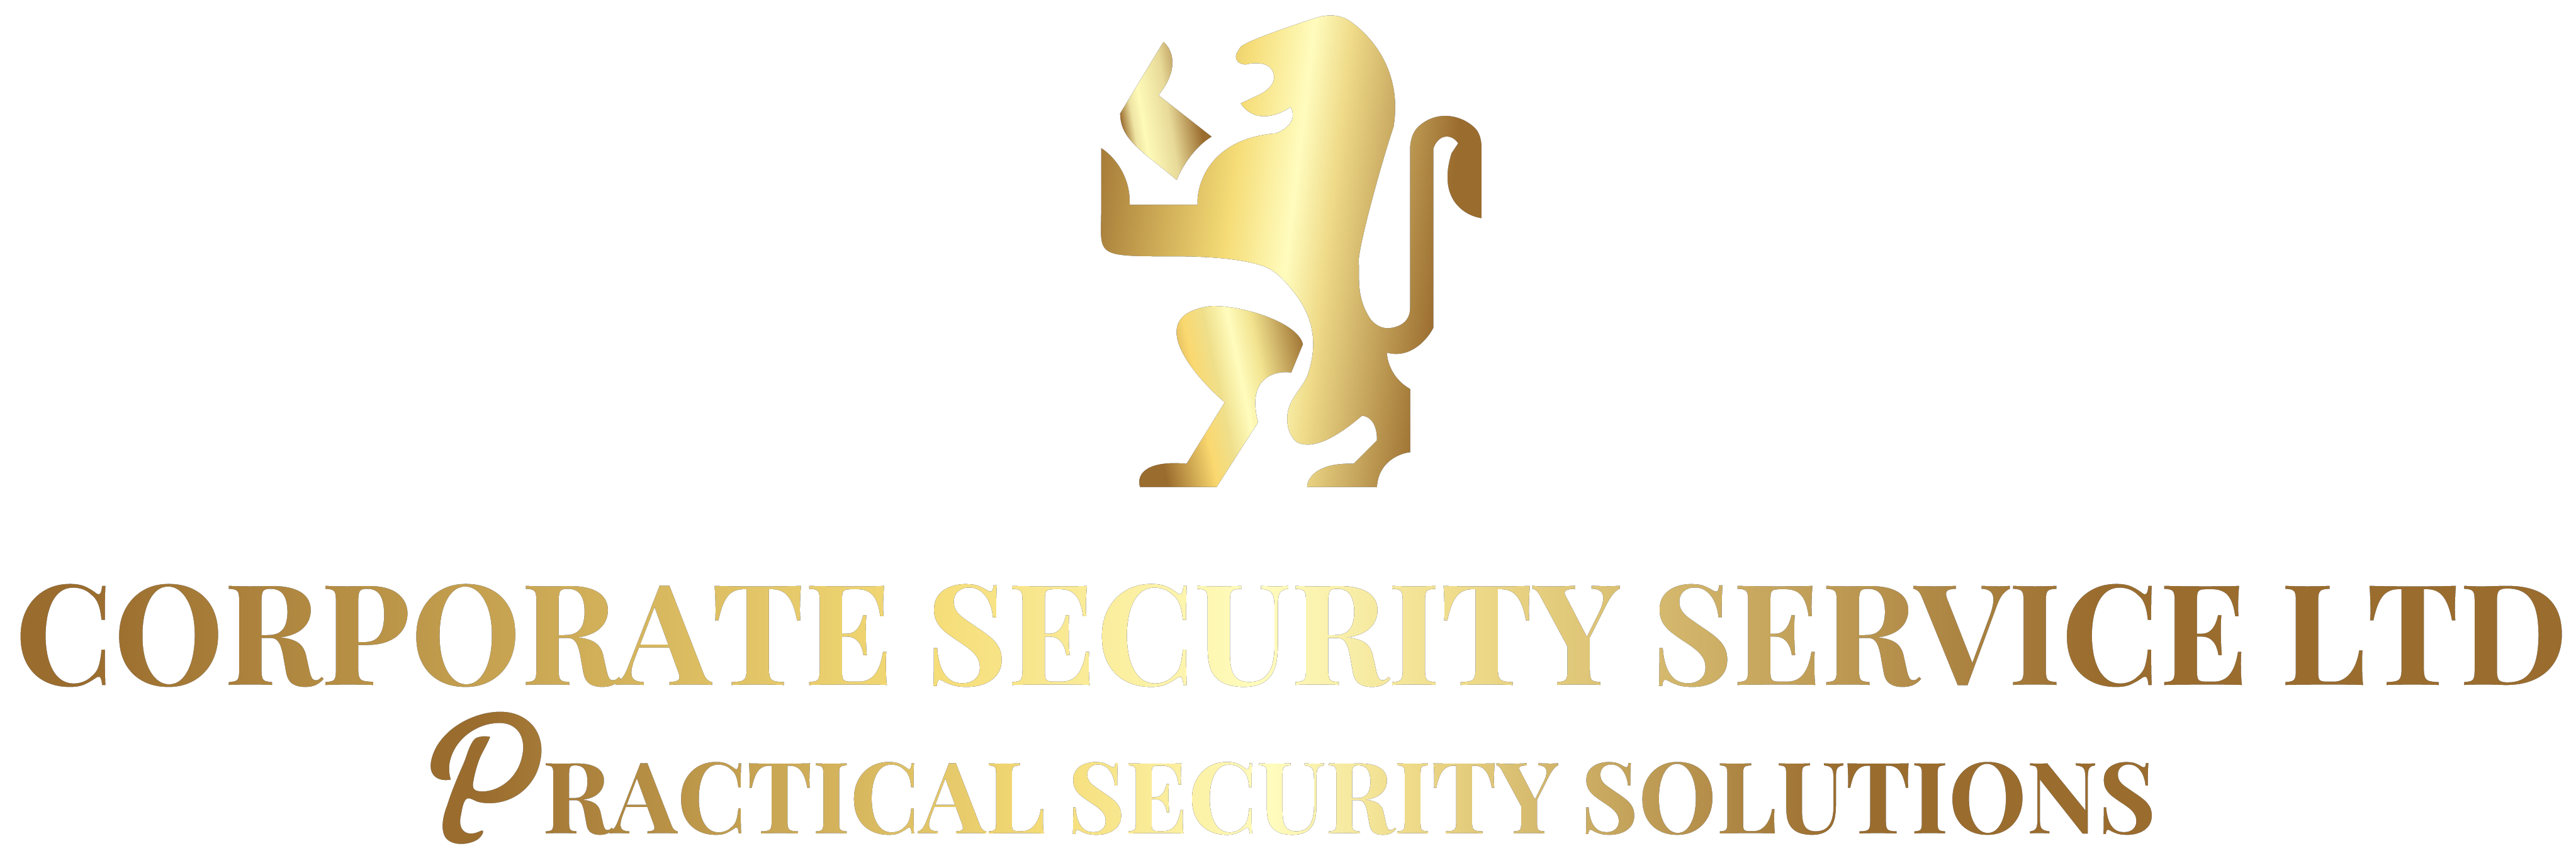 Corporate Security Service